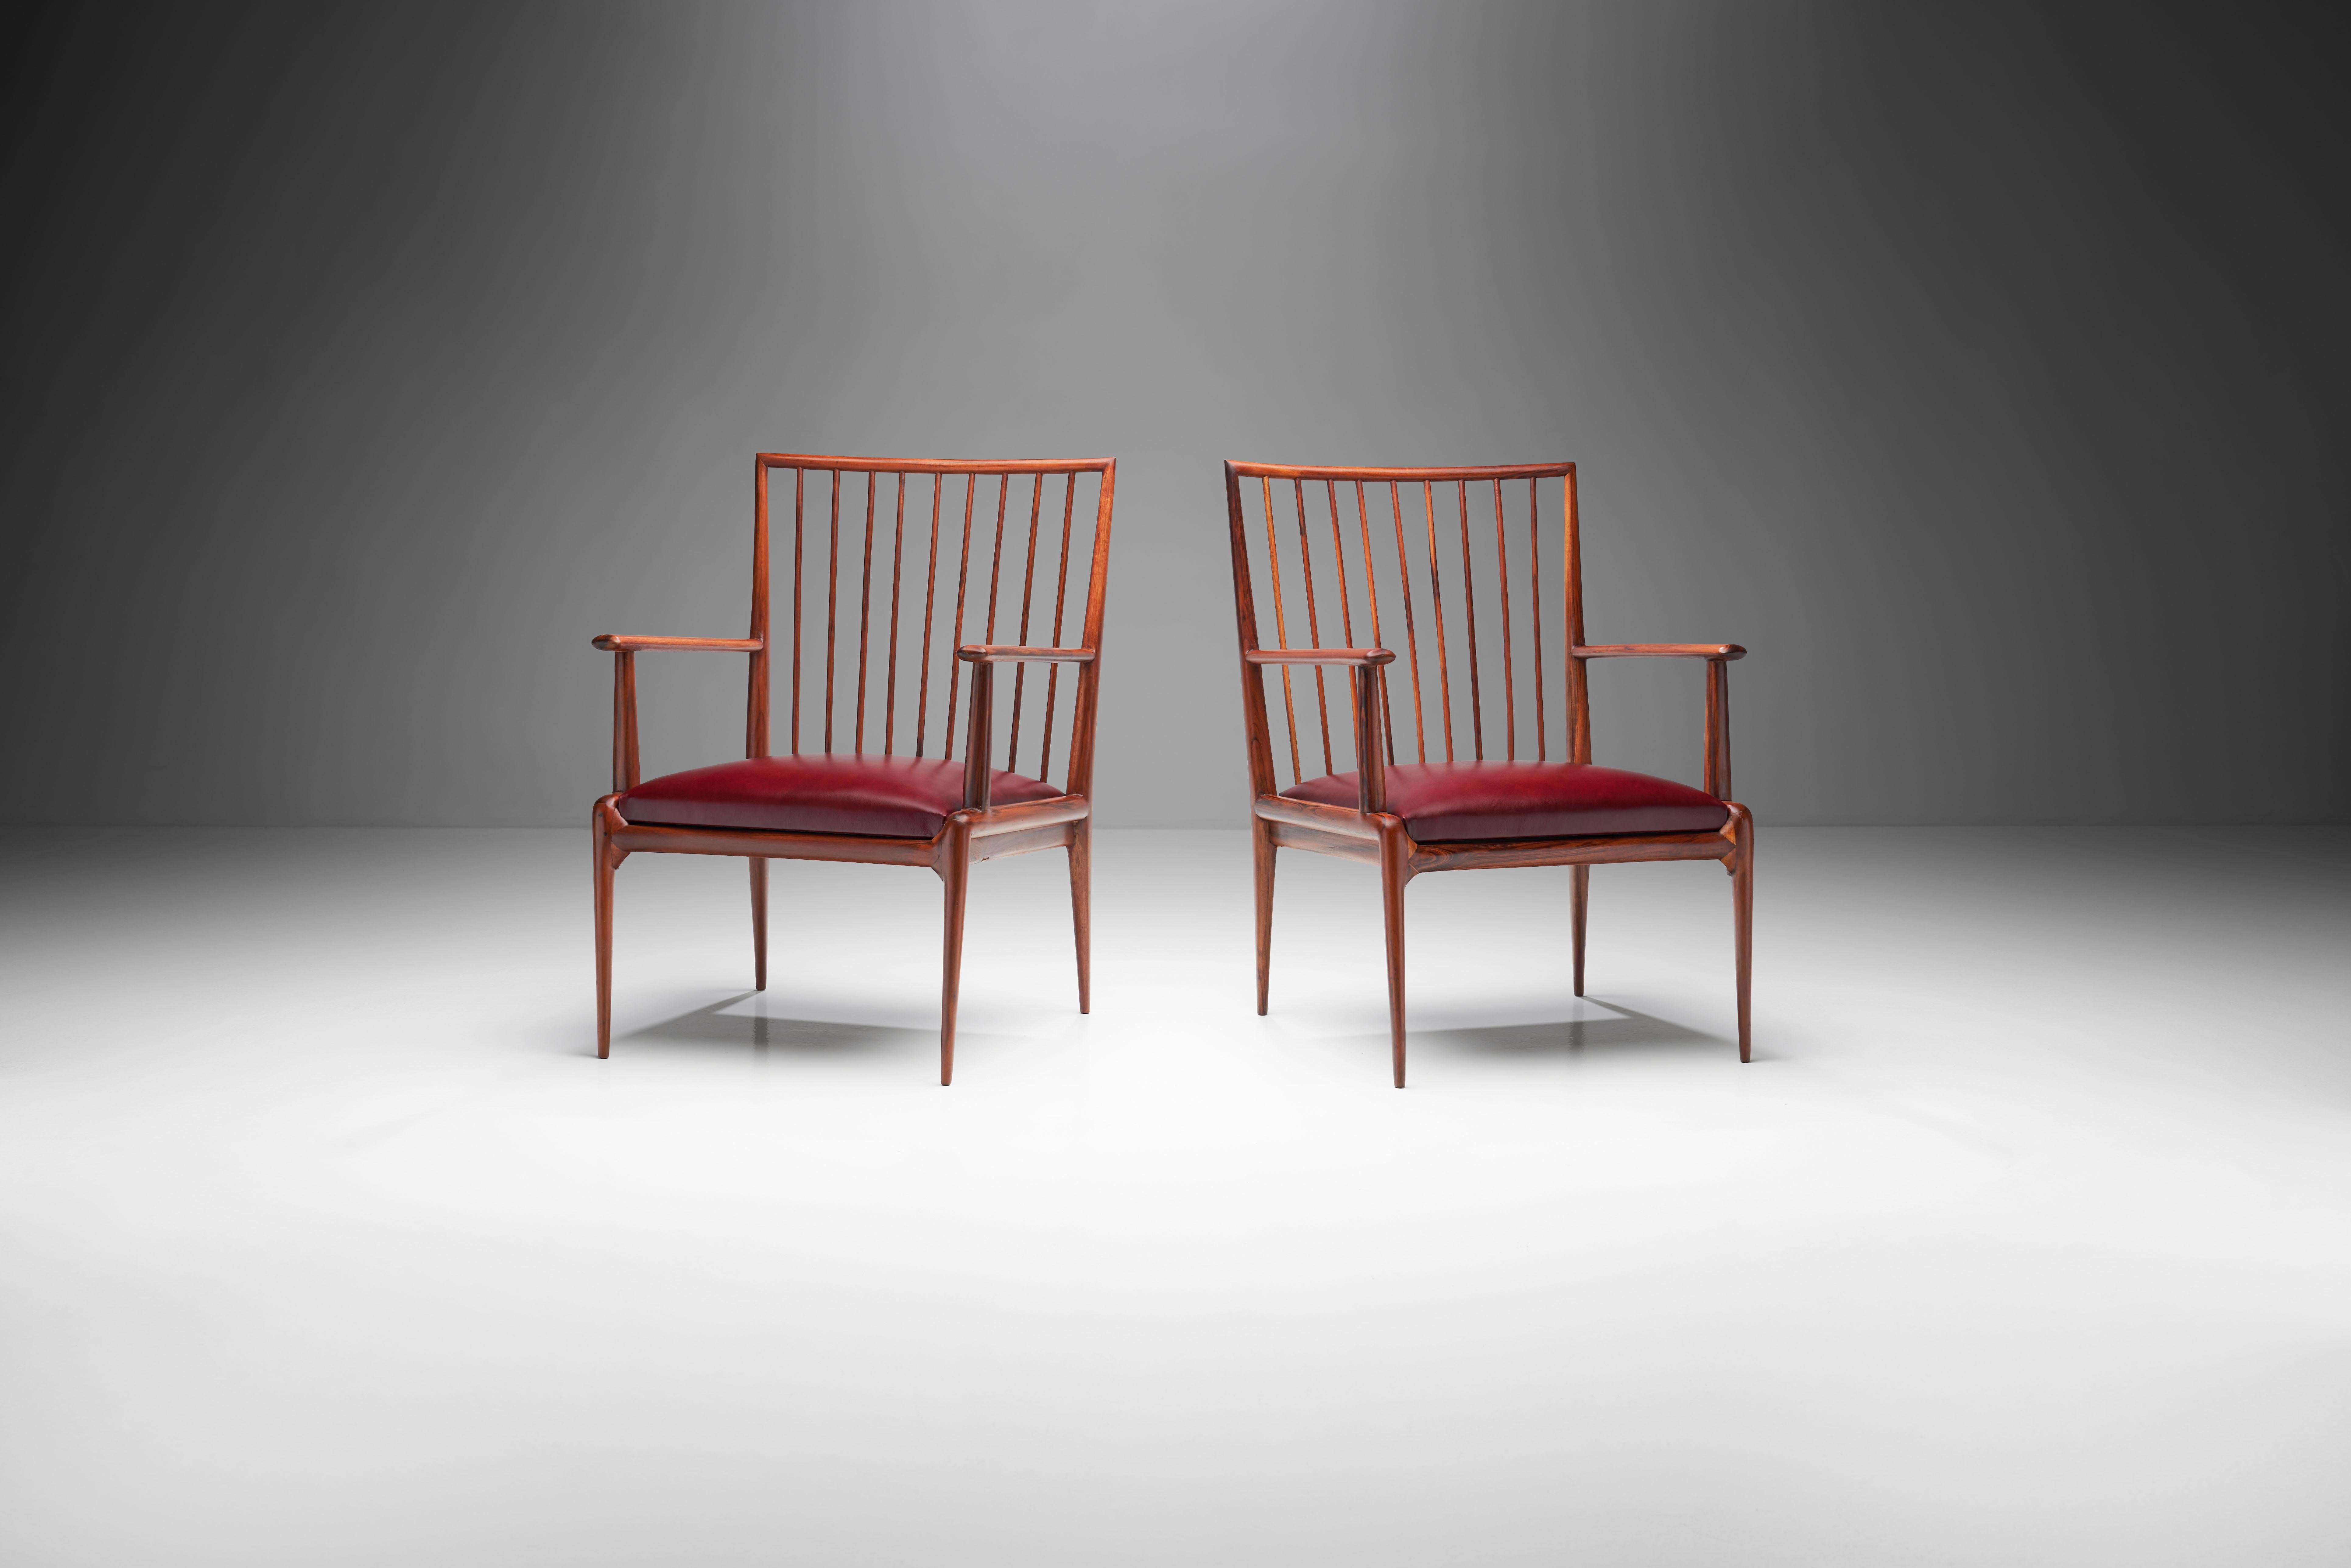 Cette rare paire de fauteuils brésiliens du milieu du siècle dernier est attribuée au collectif de designers Branco et Preto. Réalisés de manière rationnelle et géométrique, ils présentent légèreté et simplicité.

Ces chaises sont sculptées dans